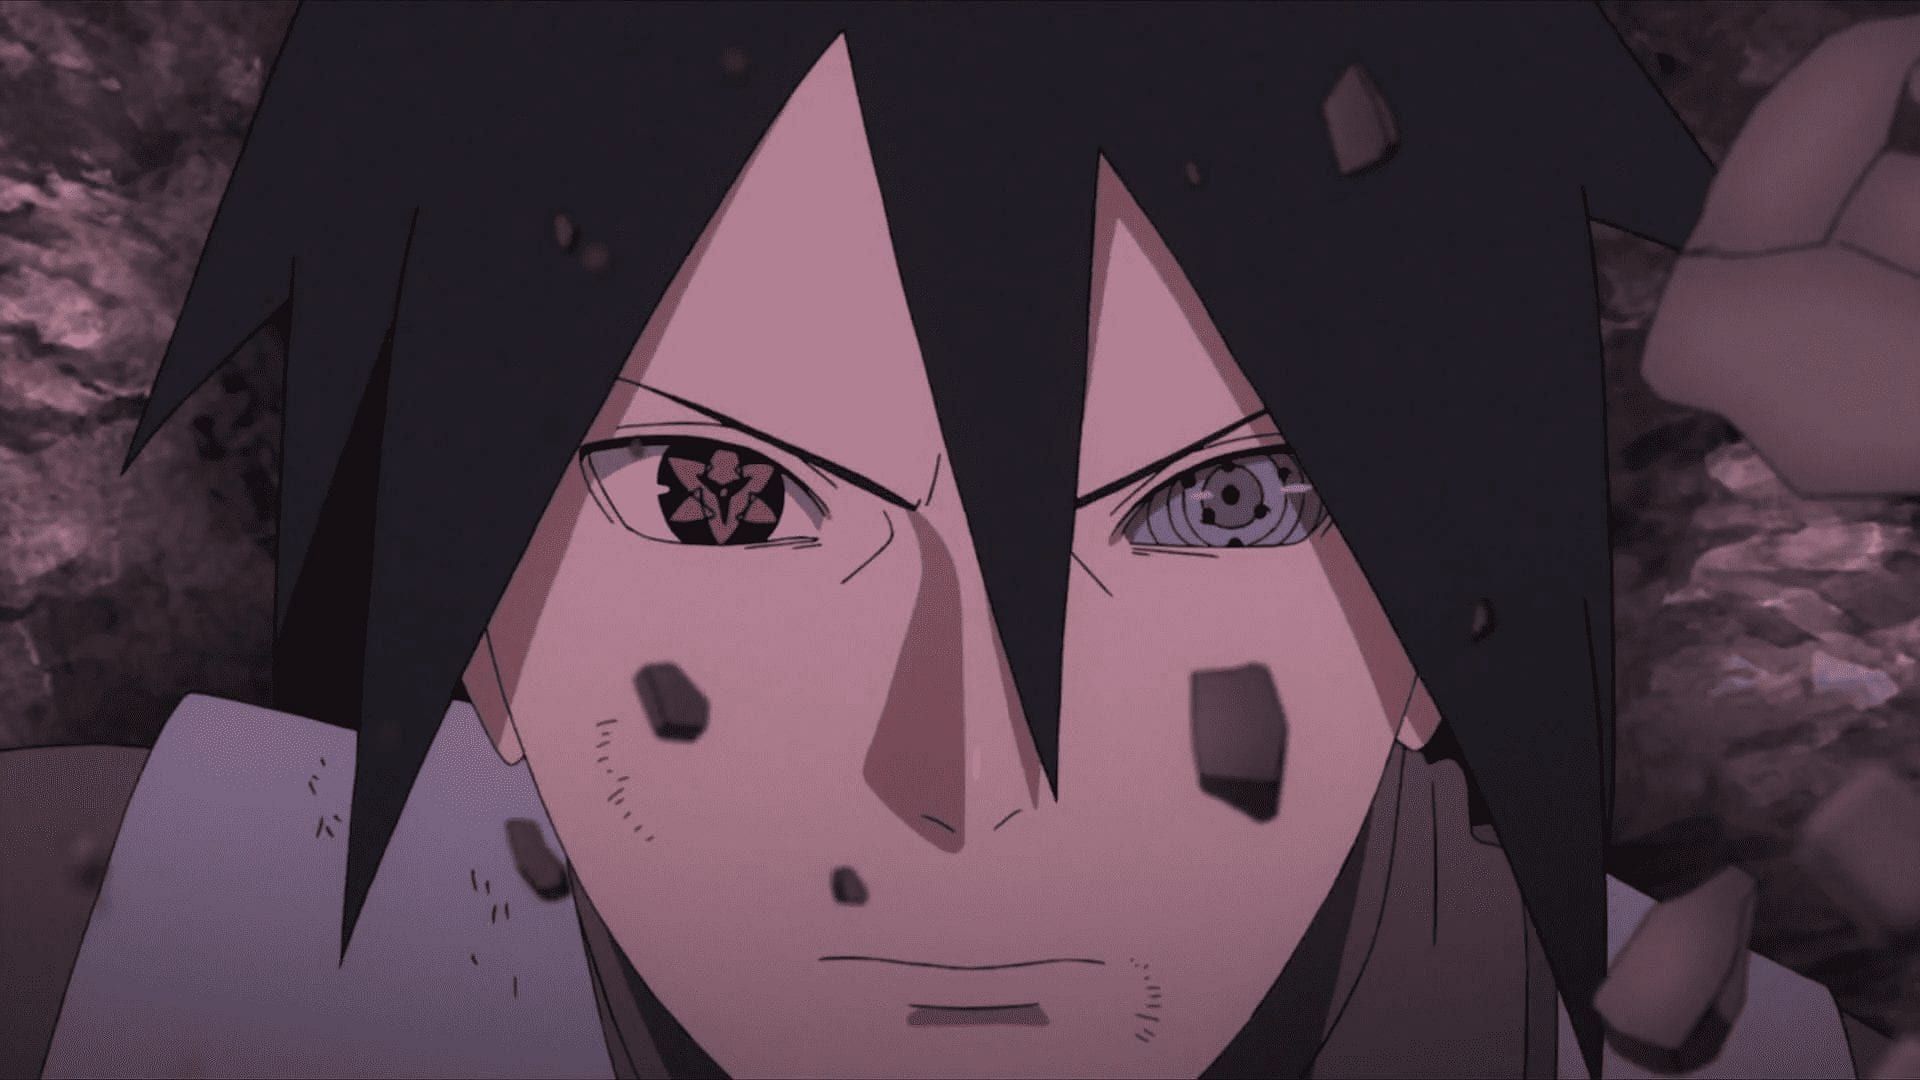 Naruto top 99? #naruto #sasuke #akatsuki #narutoshippuden #itachi #kak